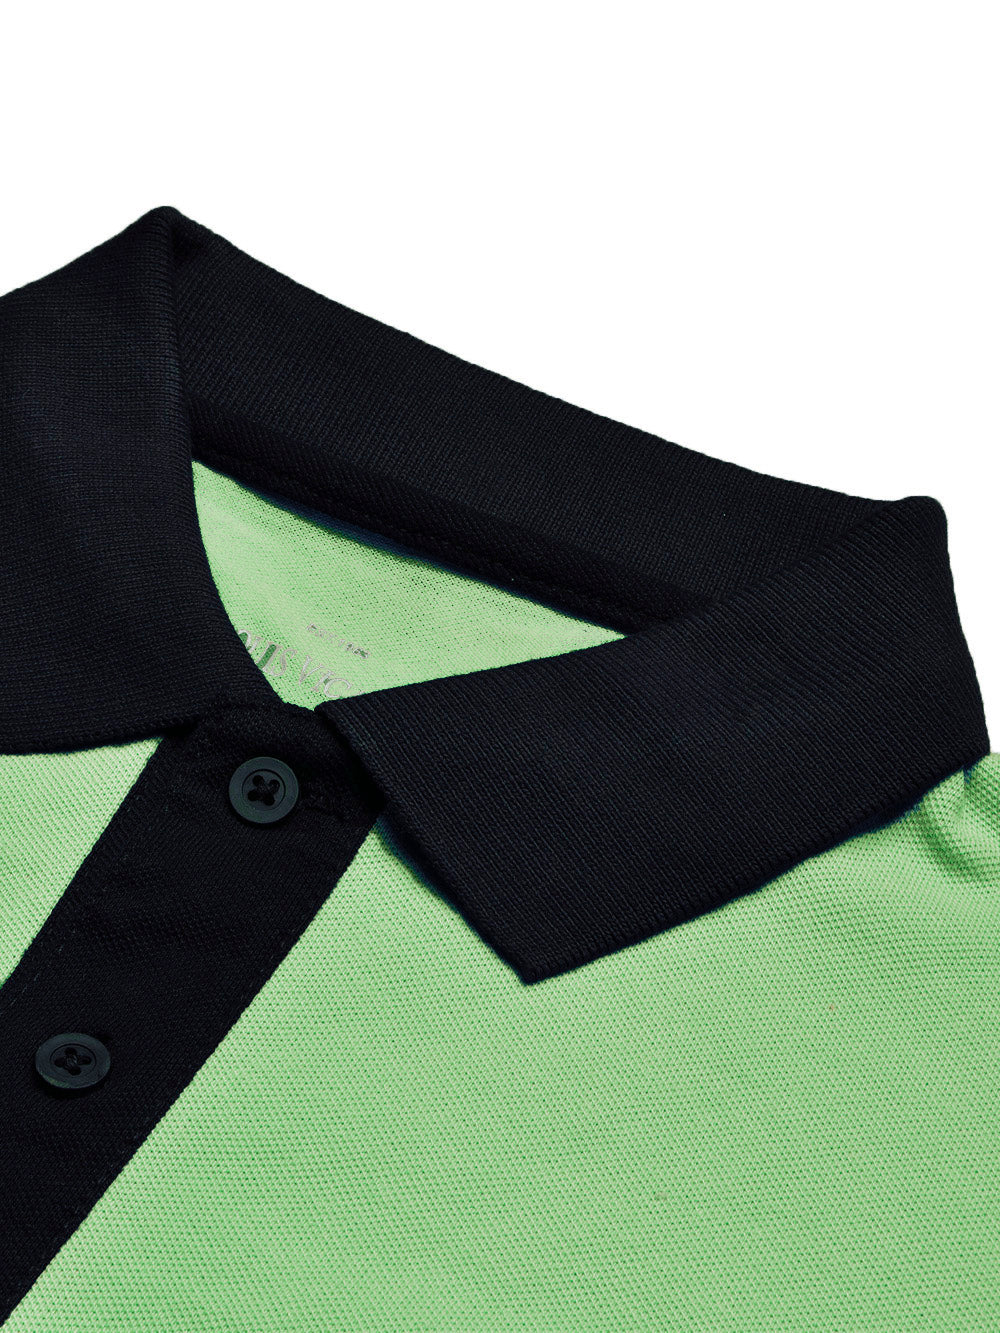 LV Summer Polo Shirt For Men-Parrot & Dark Navy-BE855/BR13093